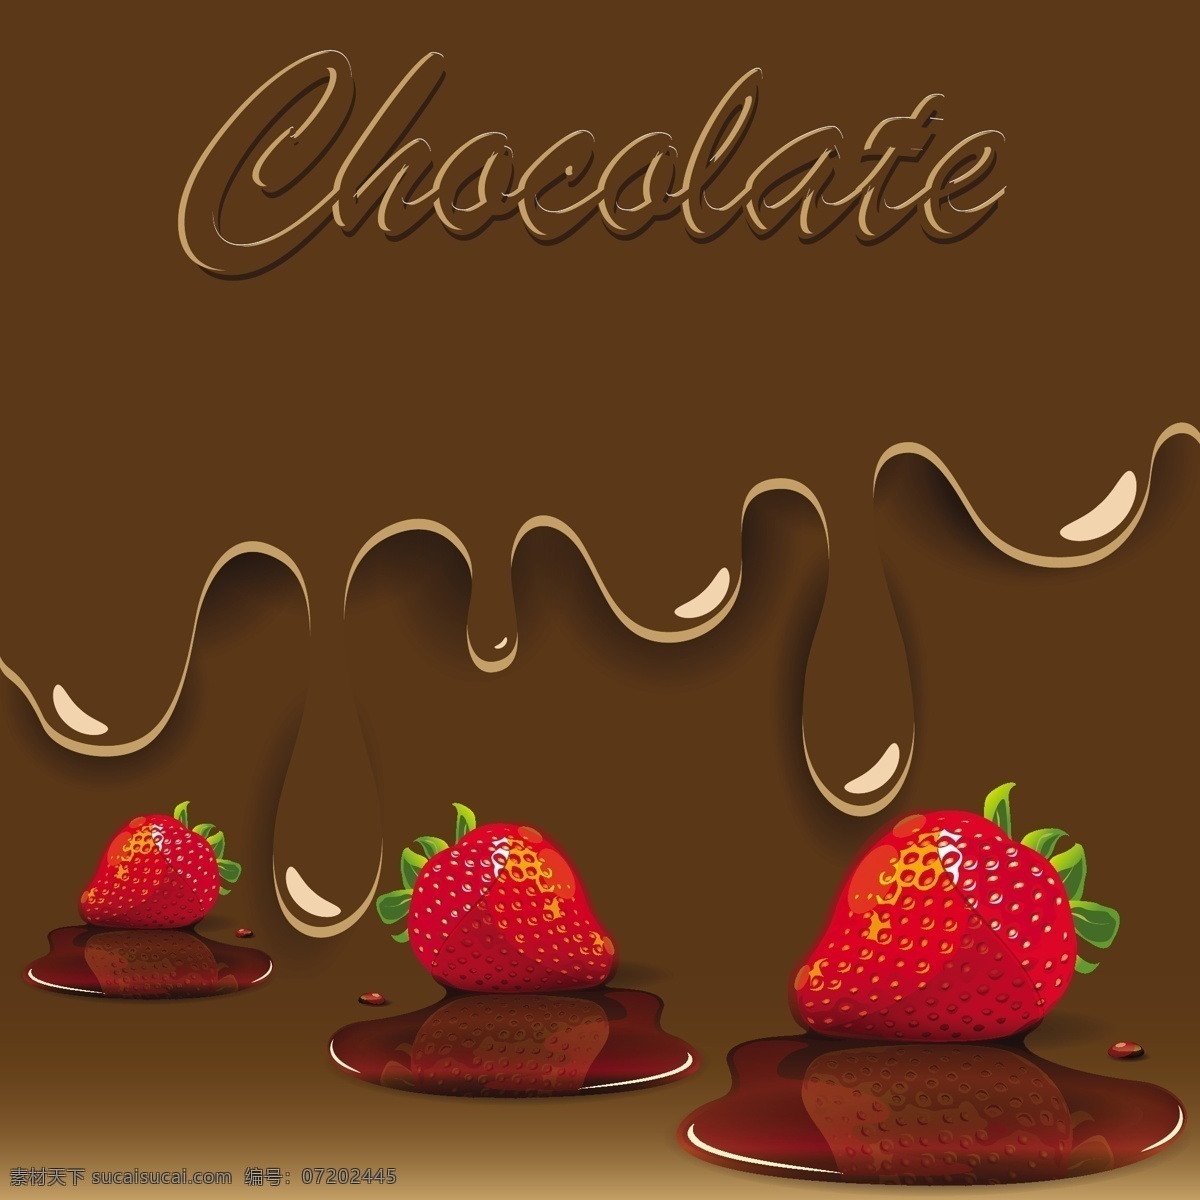 矢量 巧克力 草莓 背景 果酱 红色 矢量素材 水果 饮食 甜草莓 矢量图